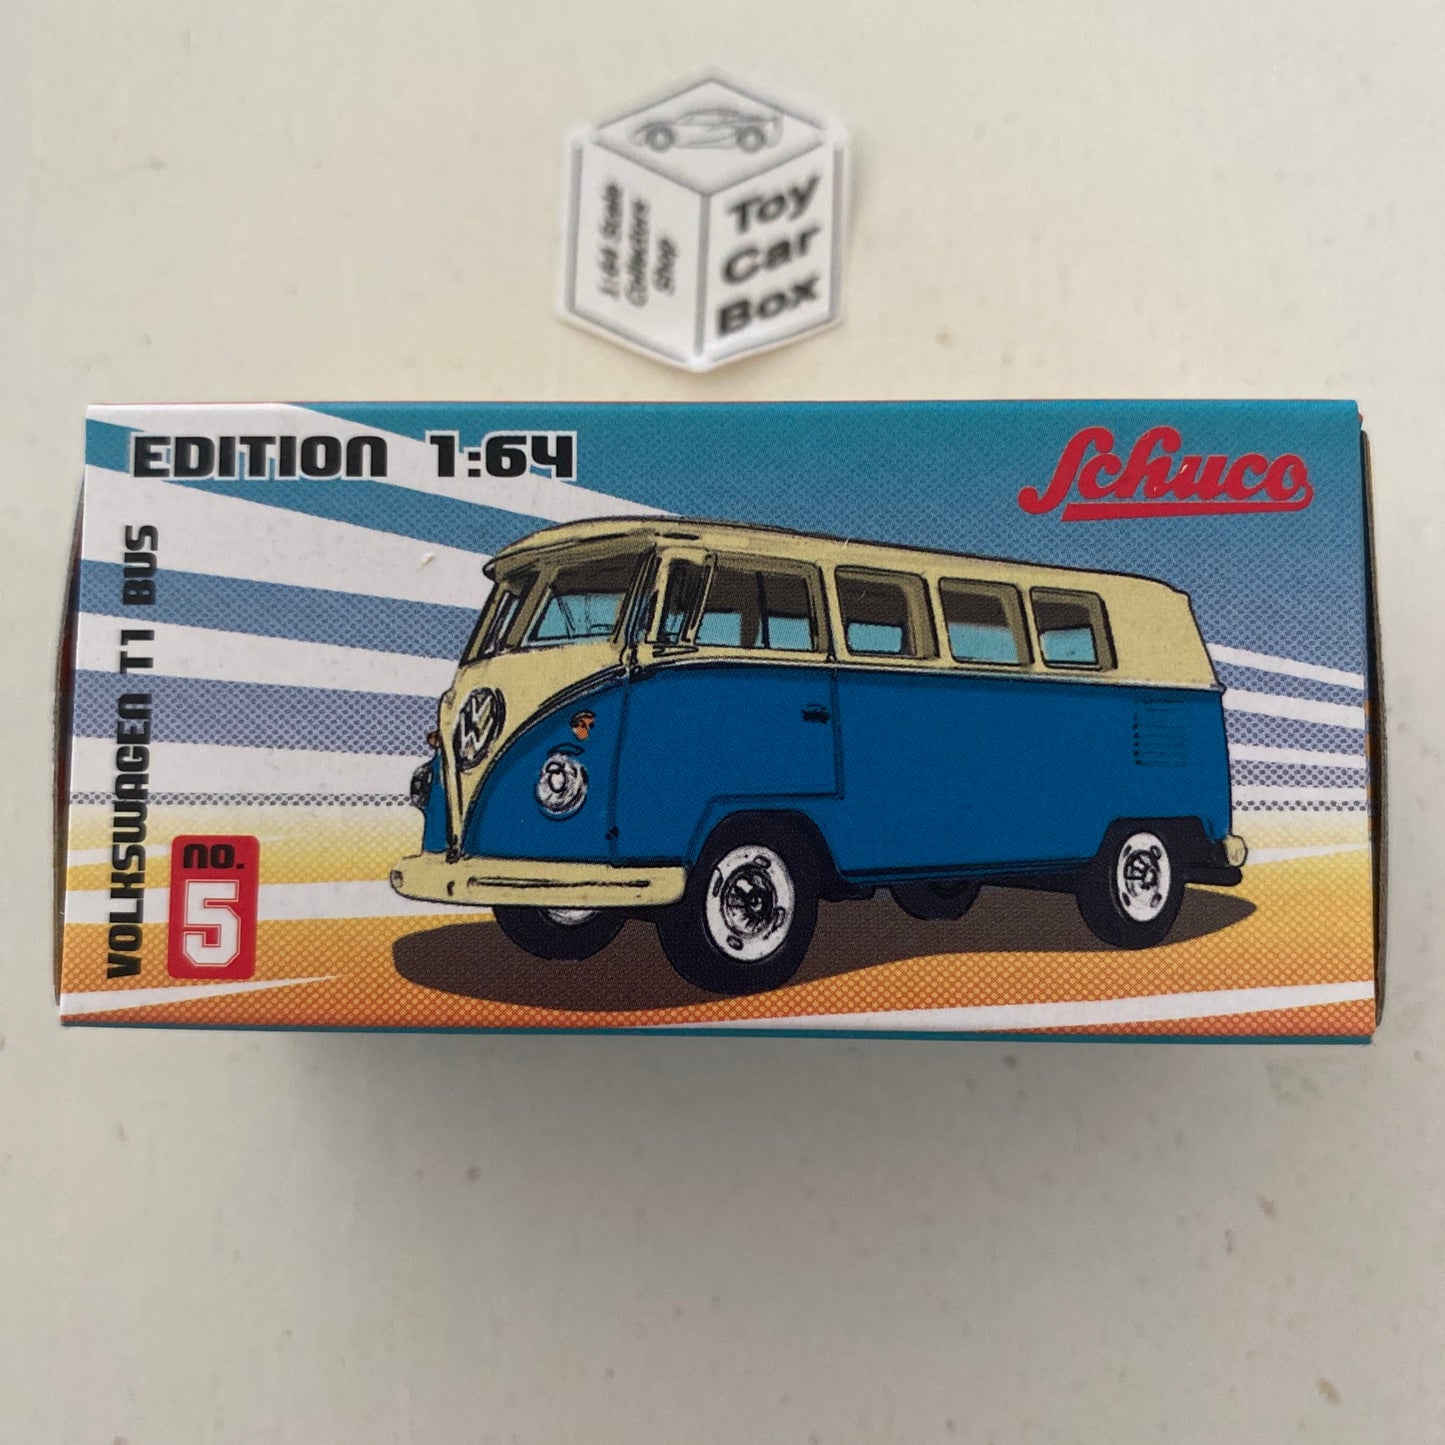 SCHUCO Edition 1:64 - Volkswagen VW T1 Bus (Blue & White) M18g